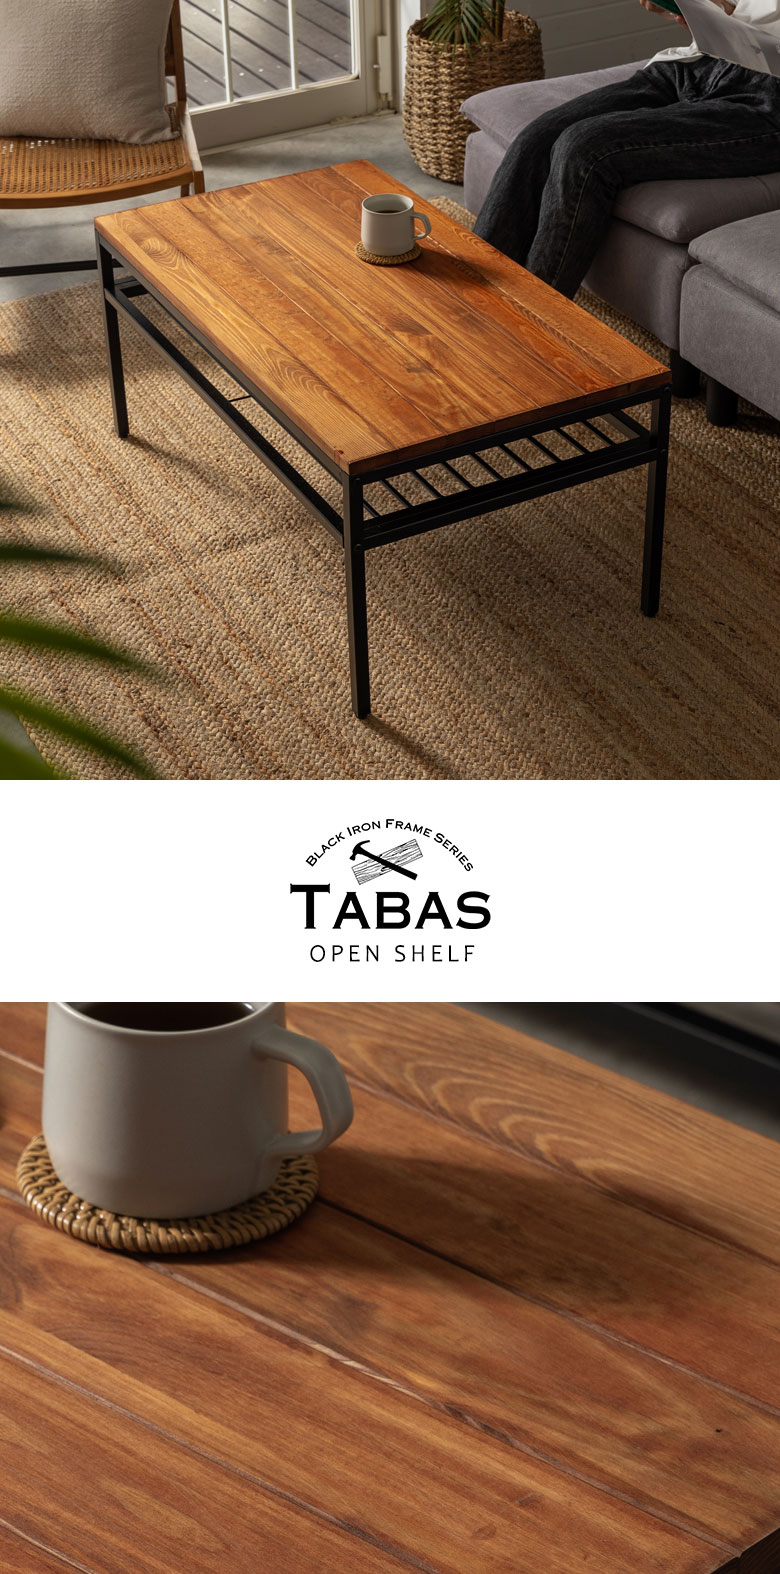 アイアンフレームのコーヒーテーブル。TABAS。タバス。